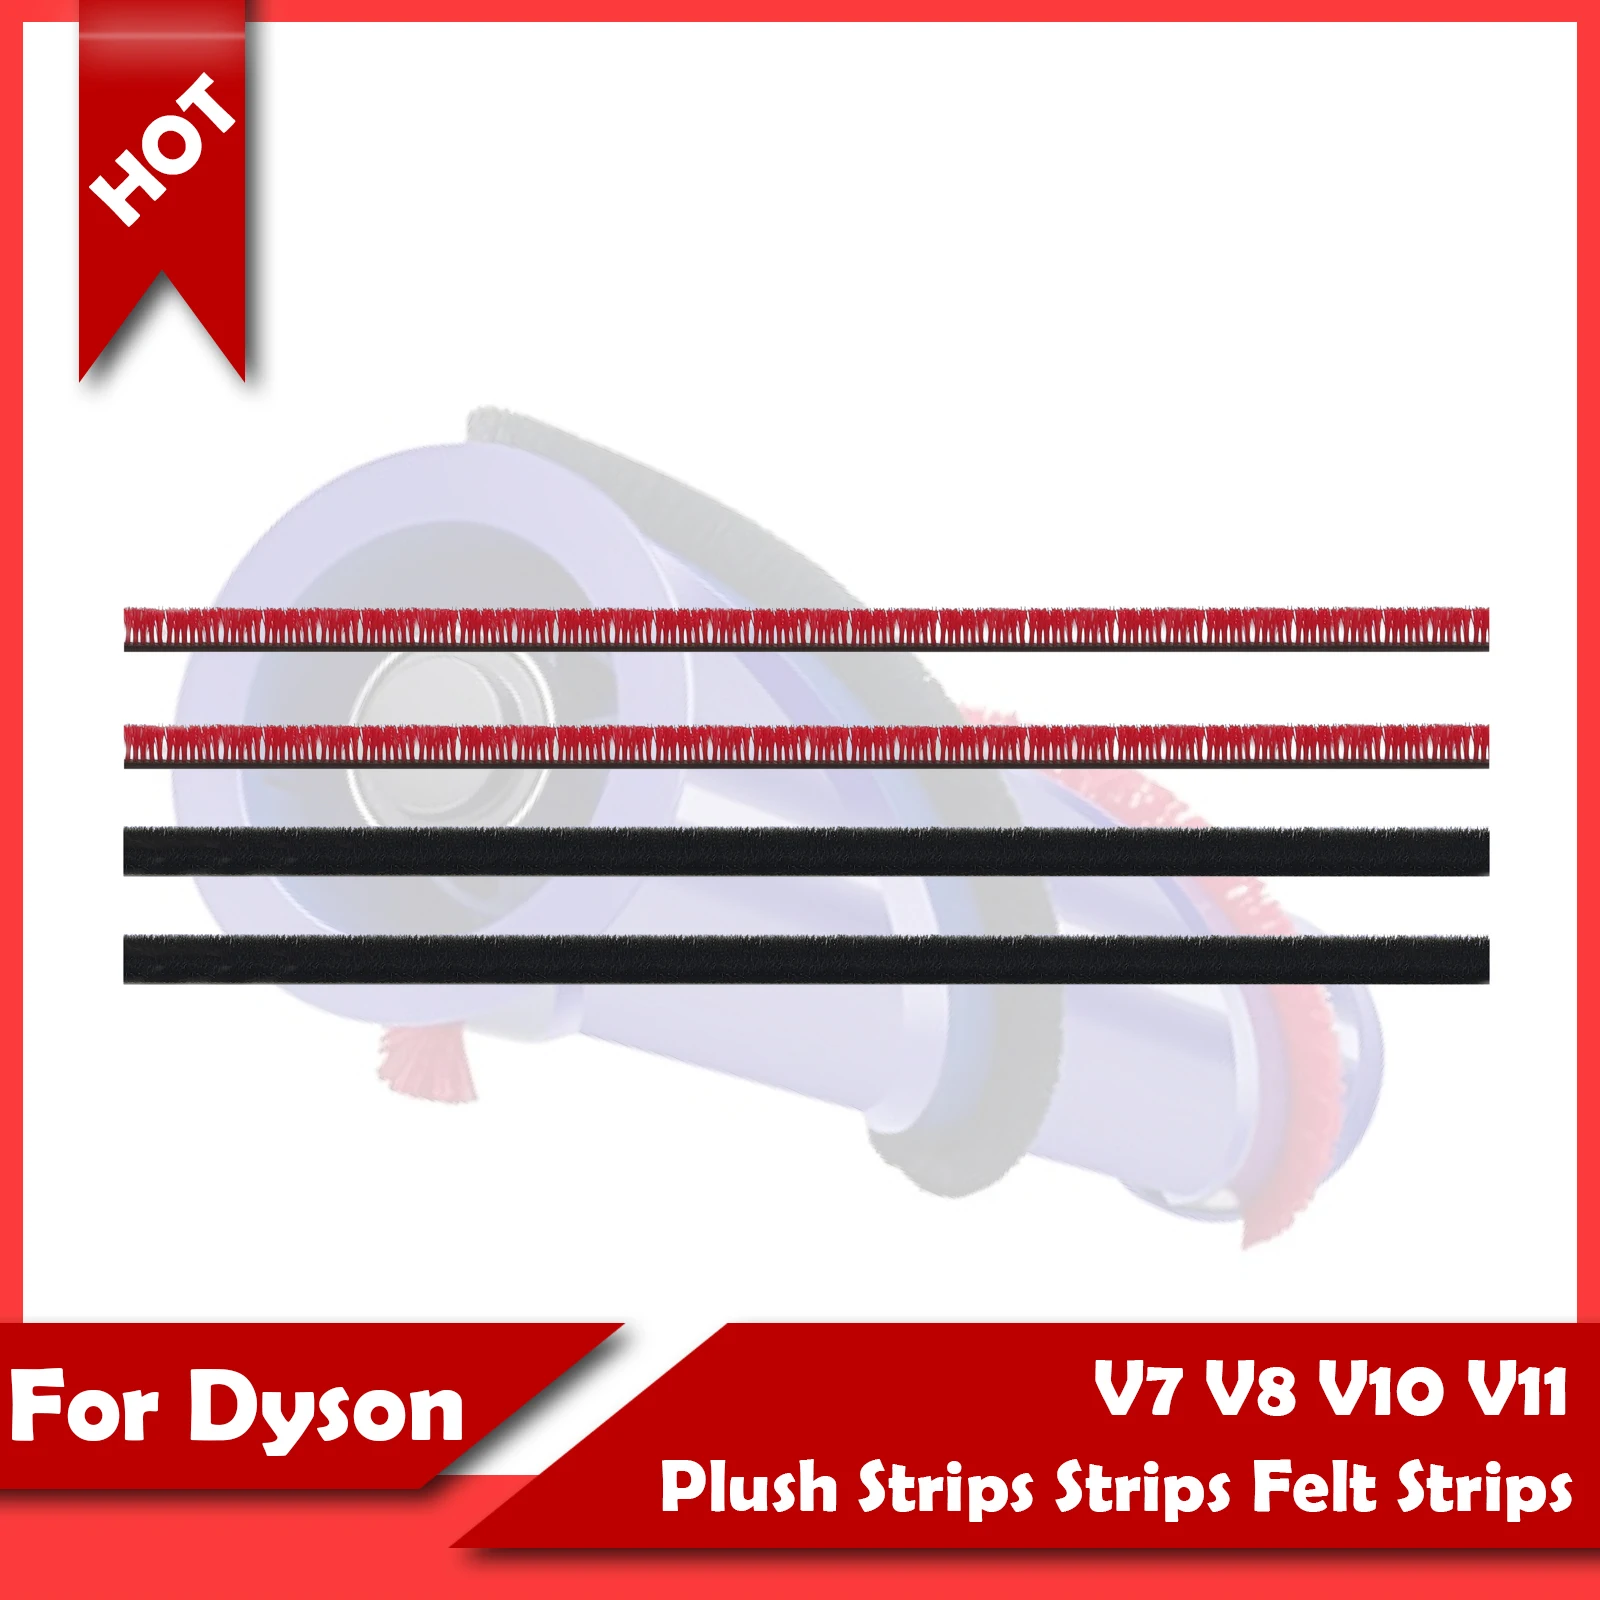 

For Dyson V7 V8 V10 V11 Vacuum cleaner 4mm Rolling brush Plush Strips Strips Felt Strips Change accessory